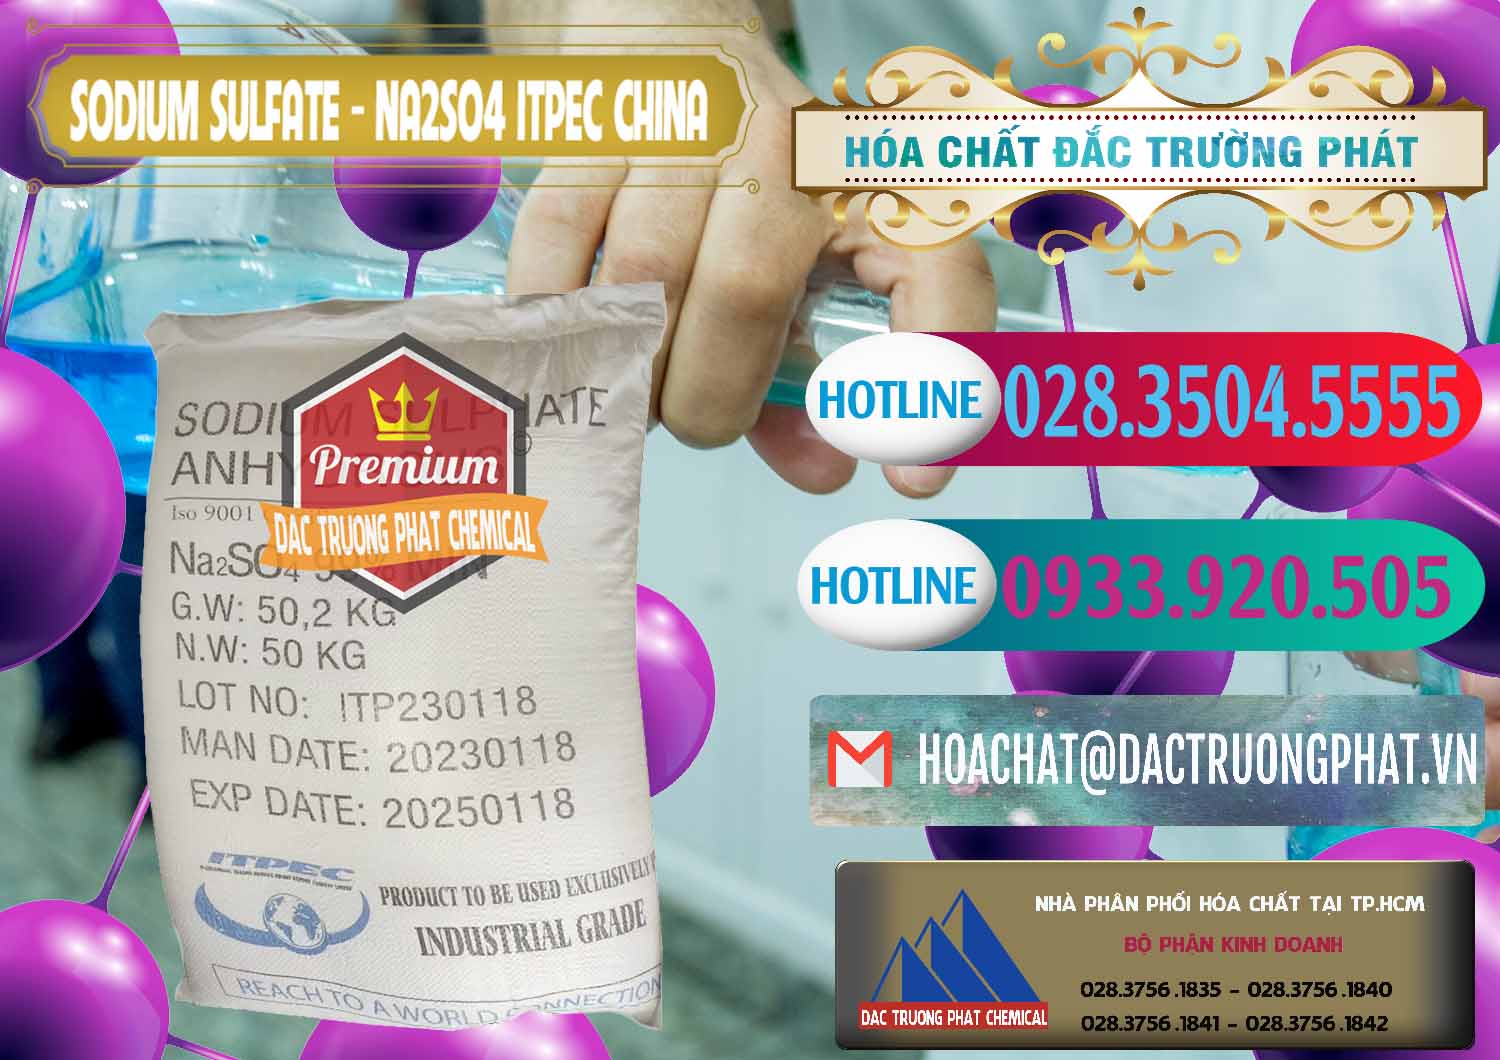 Chuyên bán ( cung cấp ) Sodium Sulphate - Muối Sunfat Na2SO4 ITPEC Trung Quốc China - 0340 - Nơi chuyên kinh doanh & cung cấp hóa chất tại TP.HCM - truongphat.vn